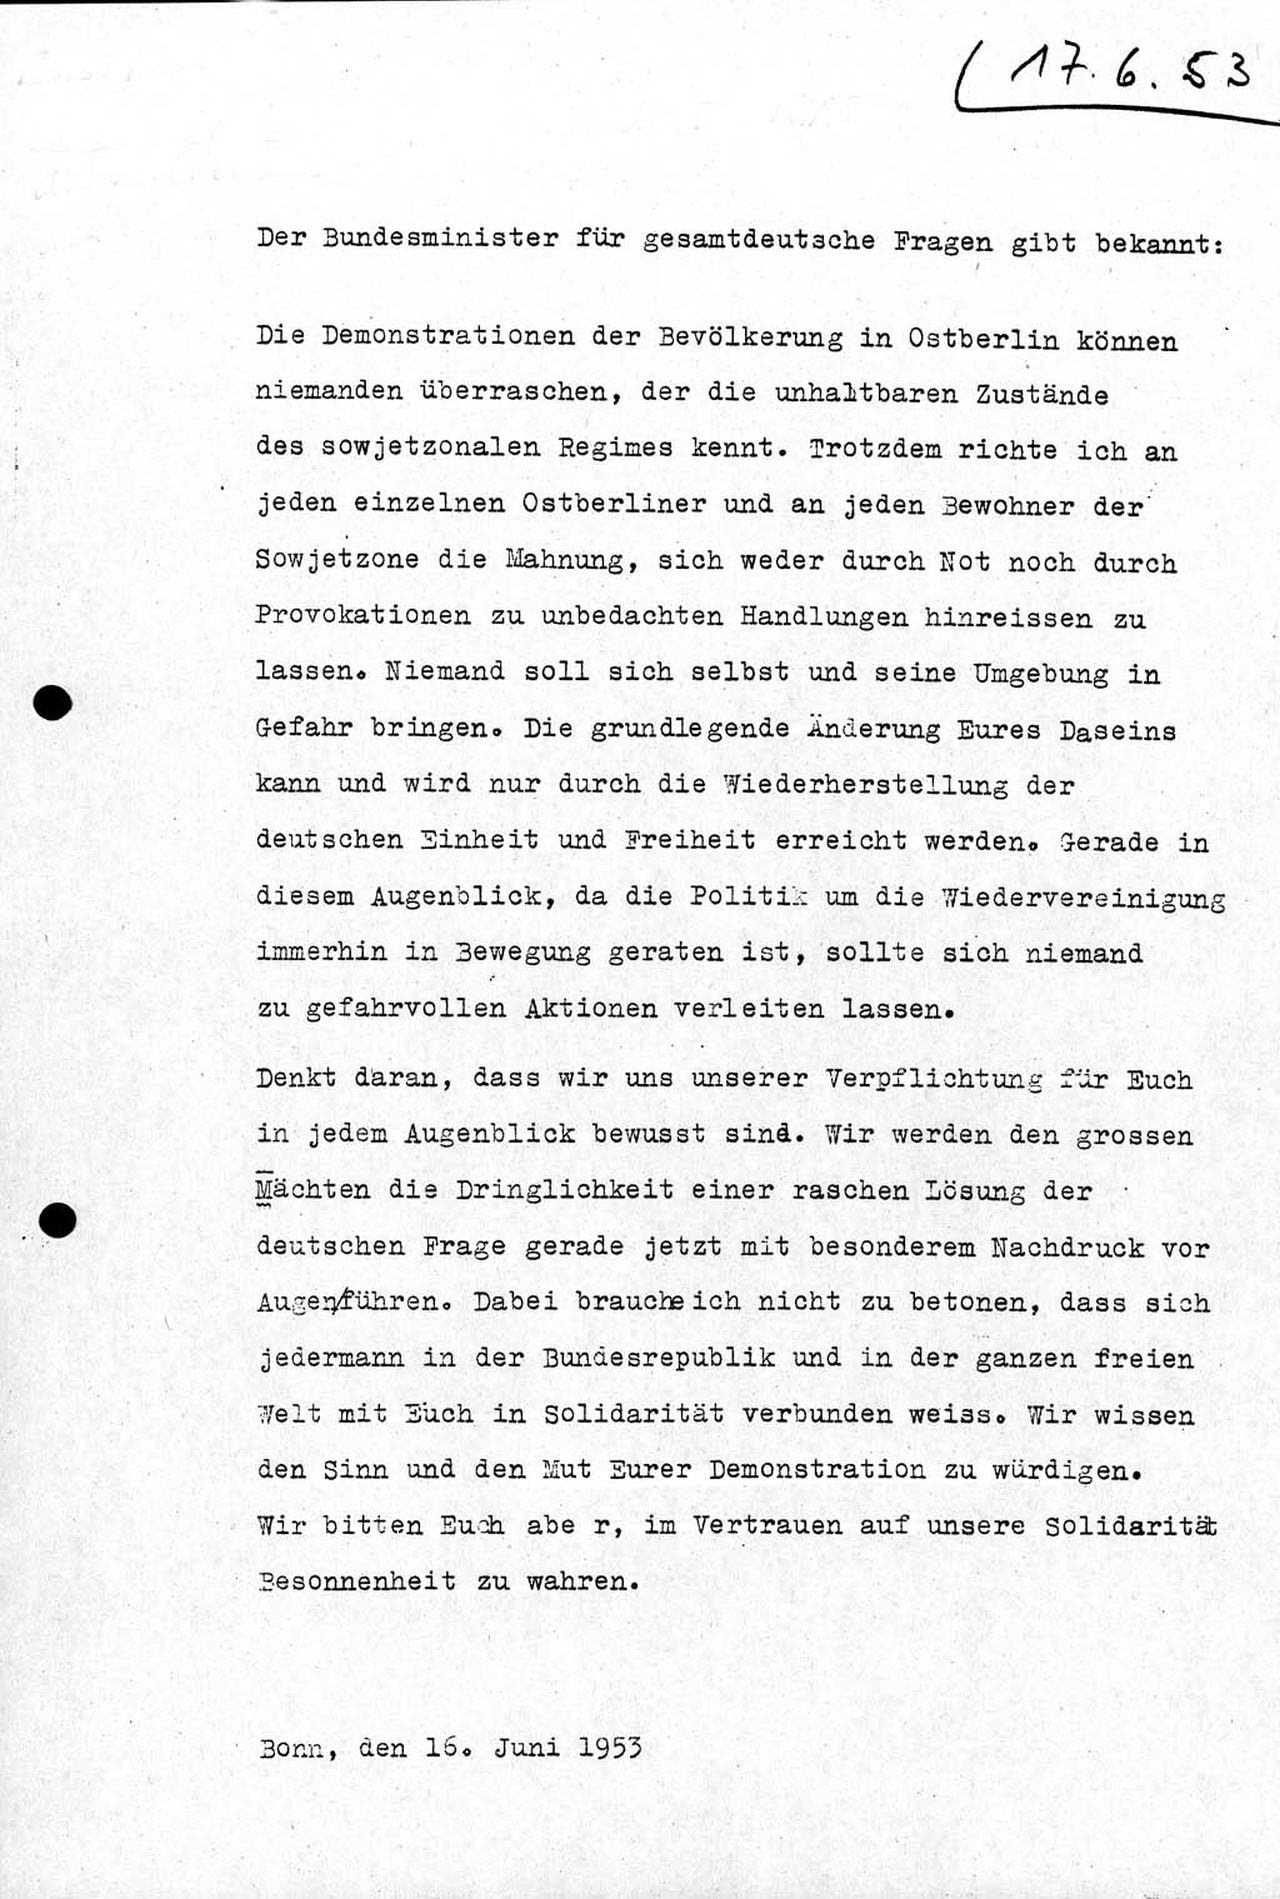 Dies ist das Manuskript einer Ansprache, in der sich der Bundesminister für gesamtdeutsche Fragen, Jakob Kaiser, am späten Abend des 16. Juni 1953 über den Sender RIAS an die Demonstranten in der Deutschen Demokratischen Republik (DDR) wendet. Er bittet 